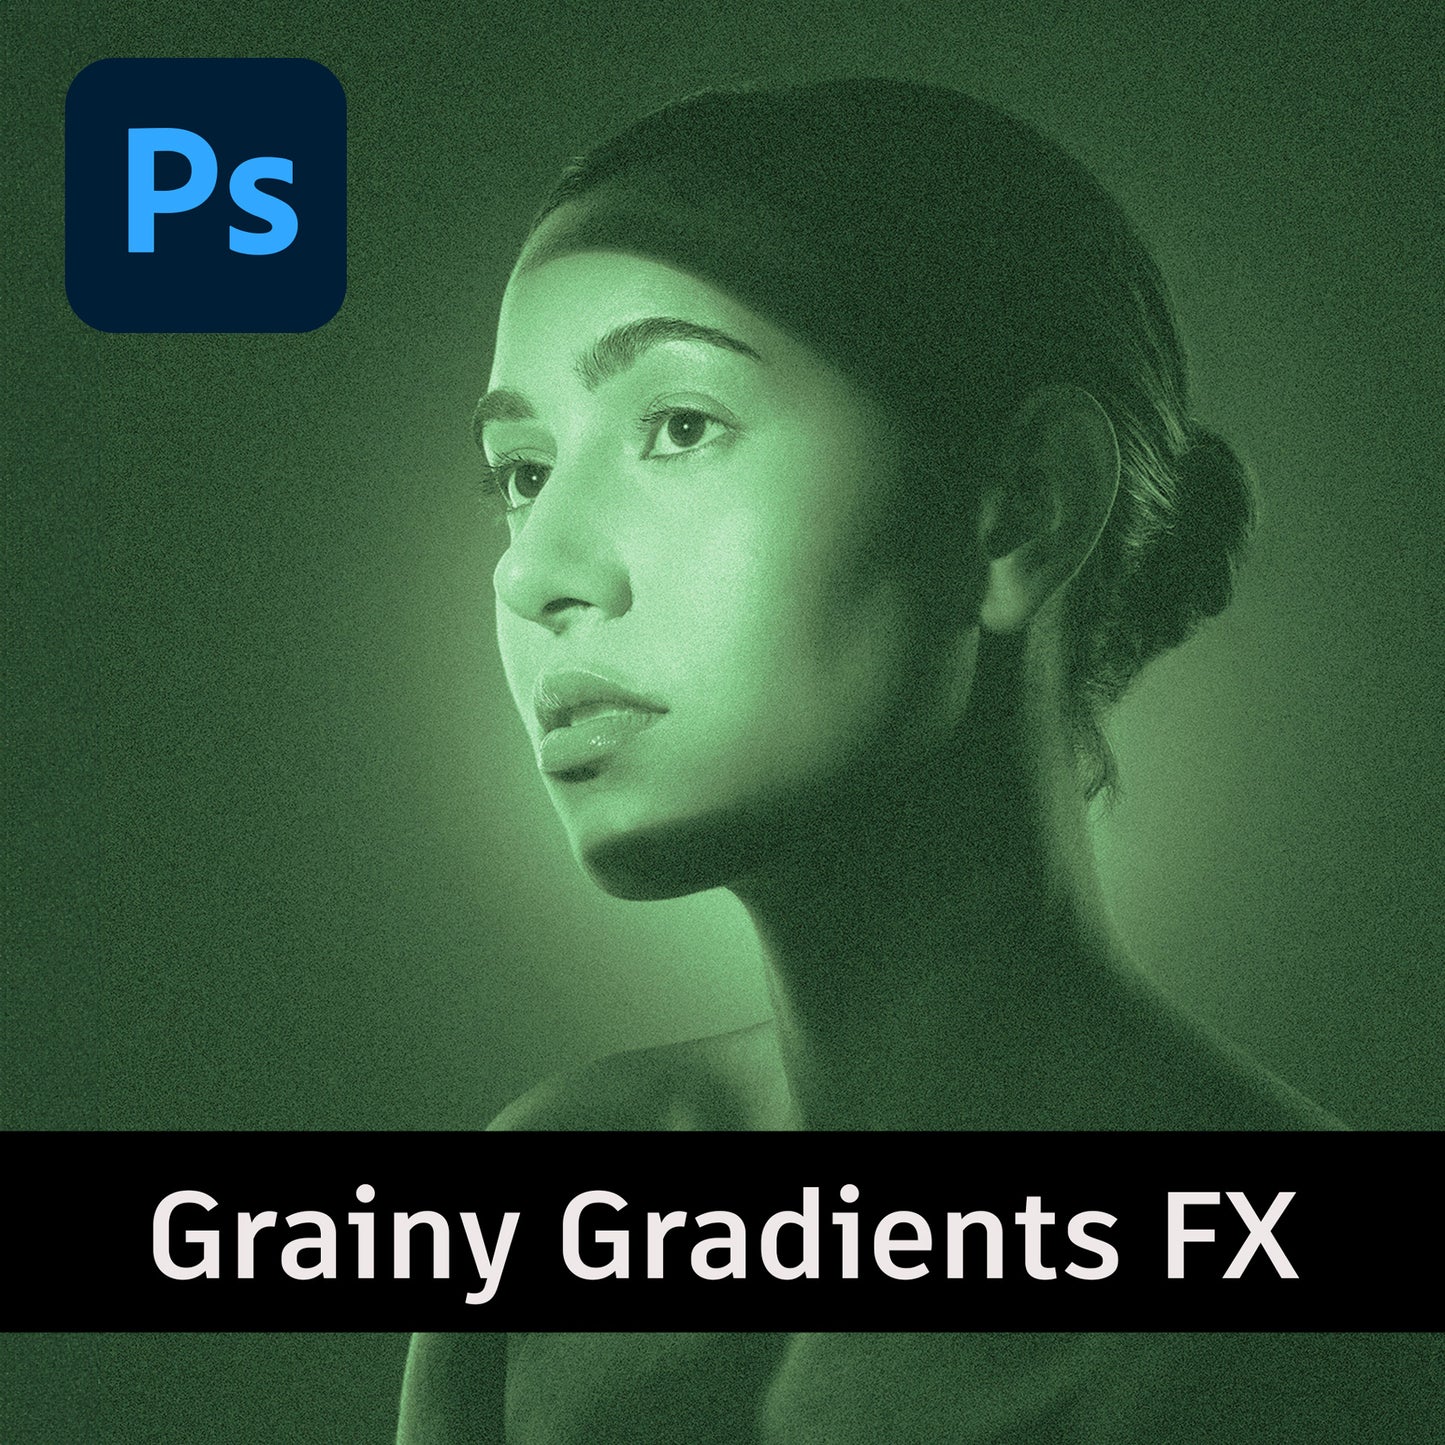 Grainy Gradients FX - Photoshop